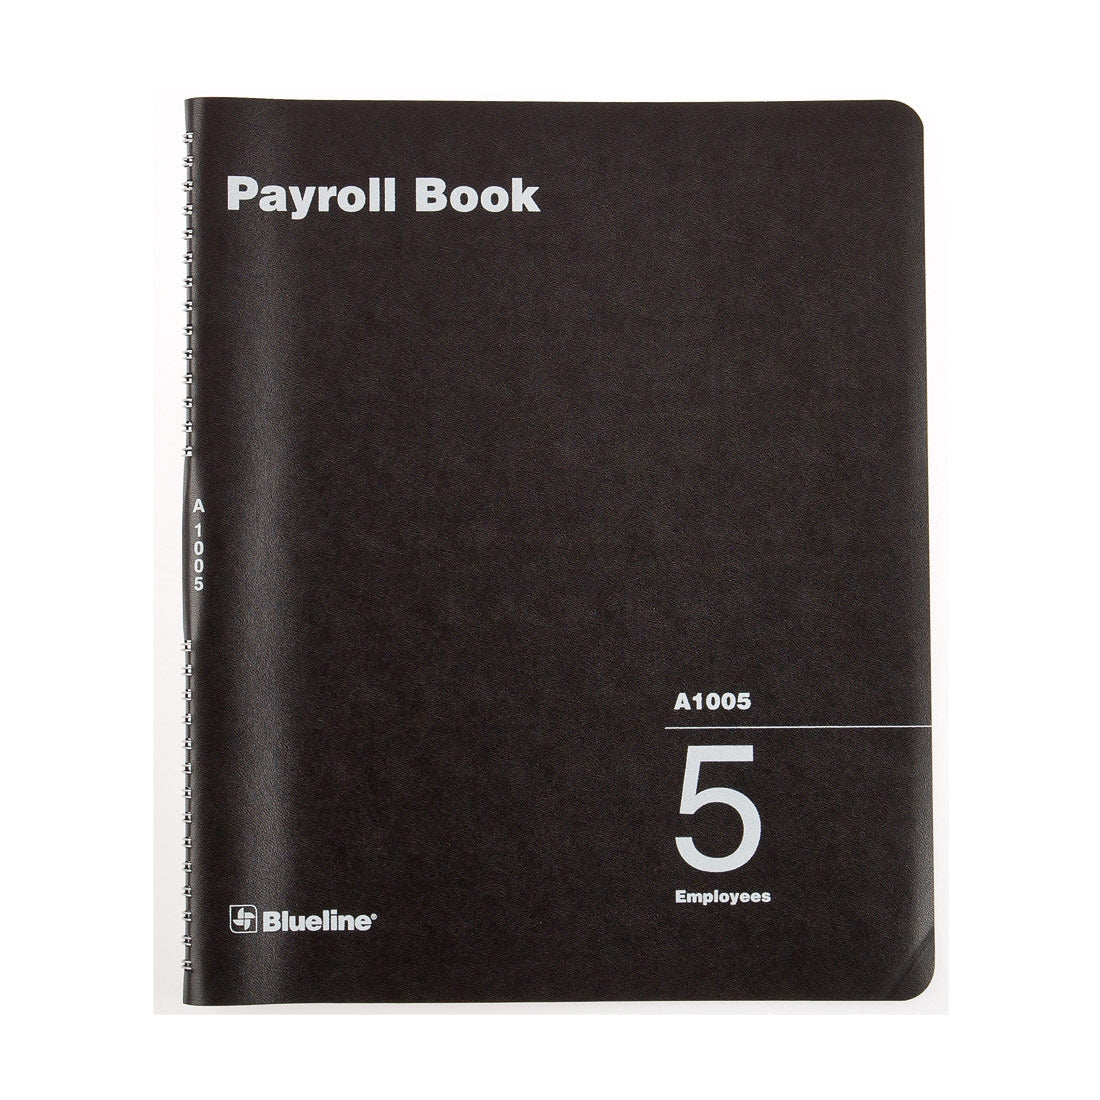 Payroll Book, 5 Employees, A1005